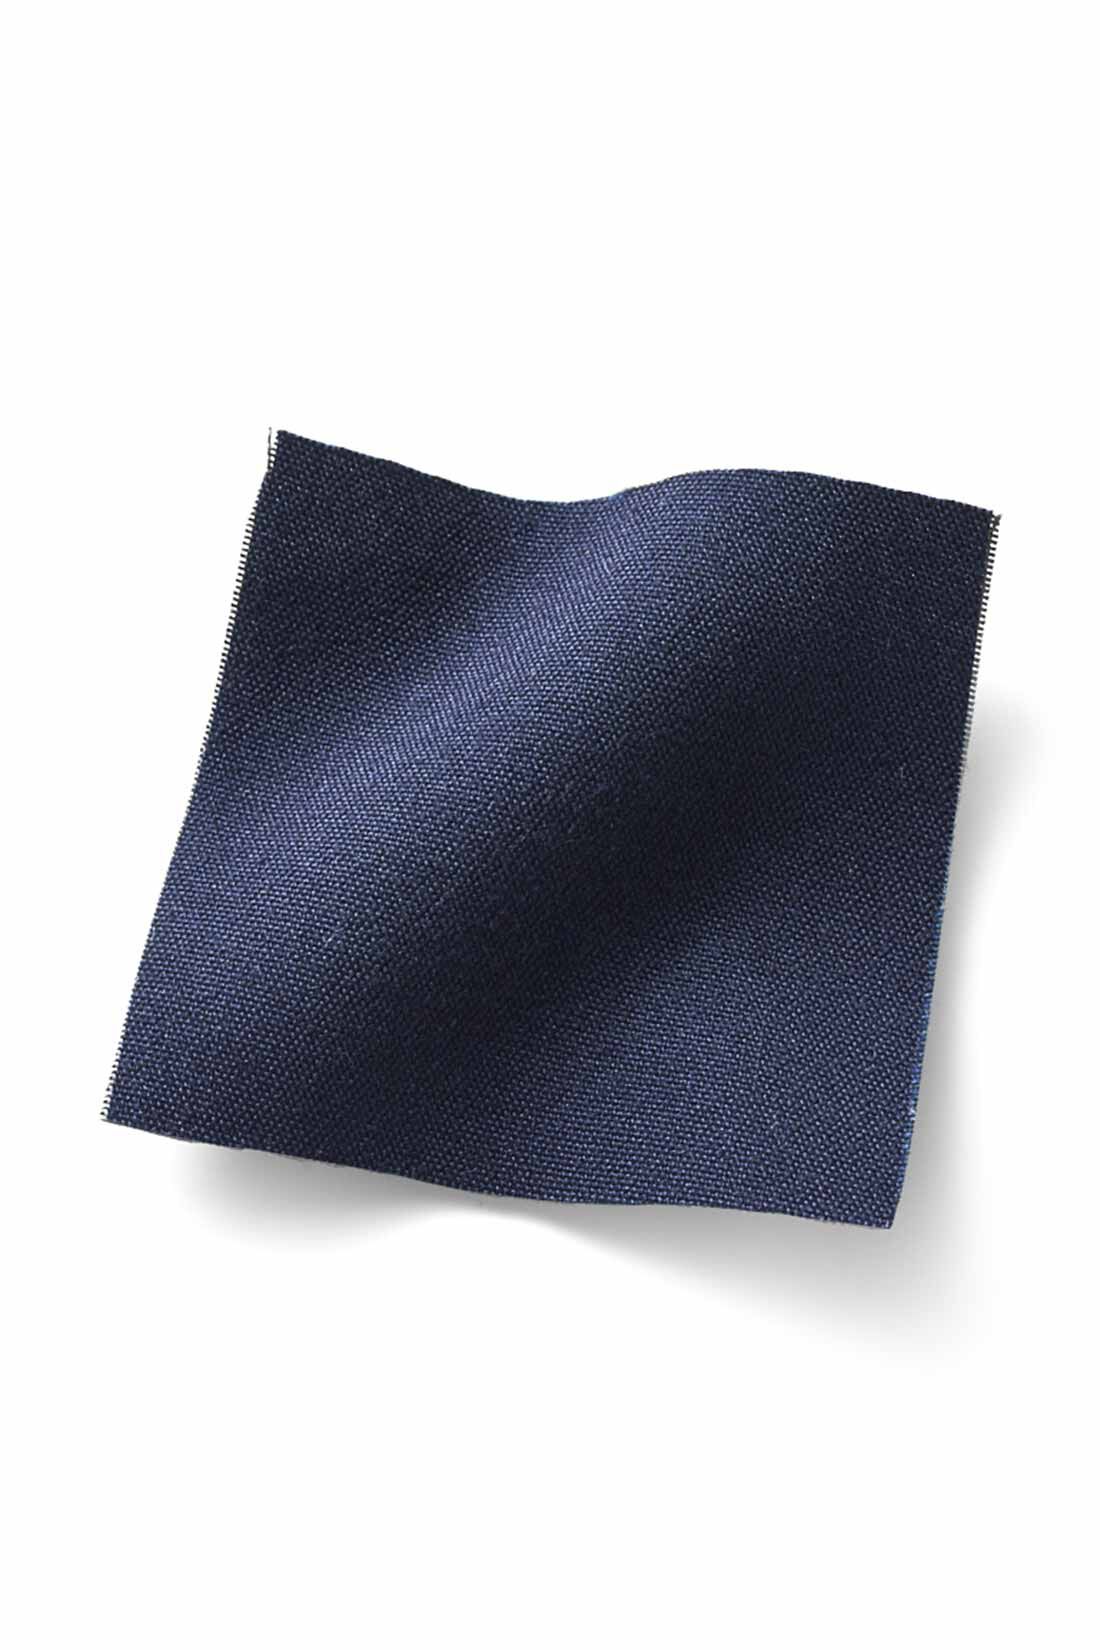 Real Stock|IEDIT[イディット]  小森美穂子さんコラボ　とろみブラウスとこだわりシック柄パンツのコーディネイトセット〈ネイビー〉|ブラウスはほどよい厚みととろみ感のある布はく素材でレディーに着こなせます。